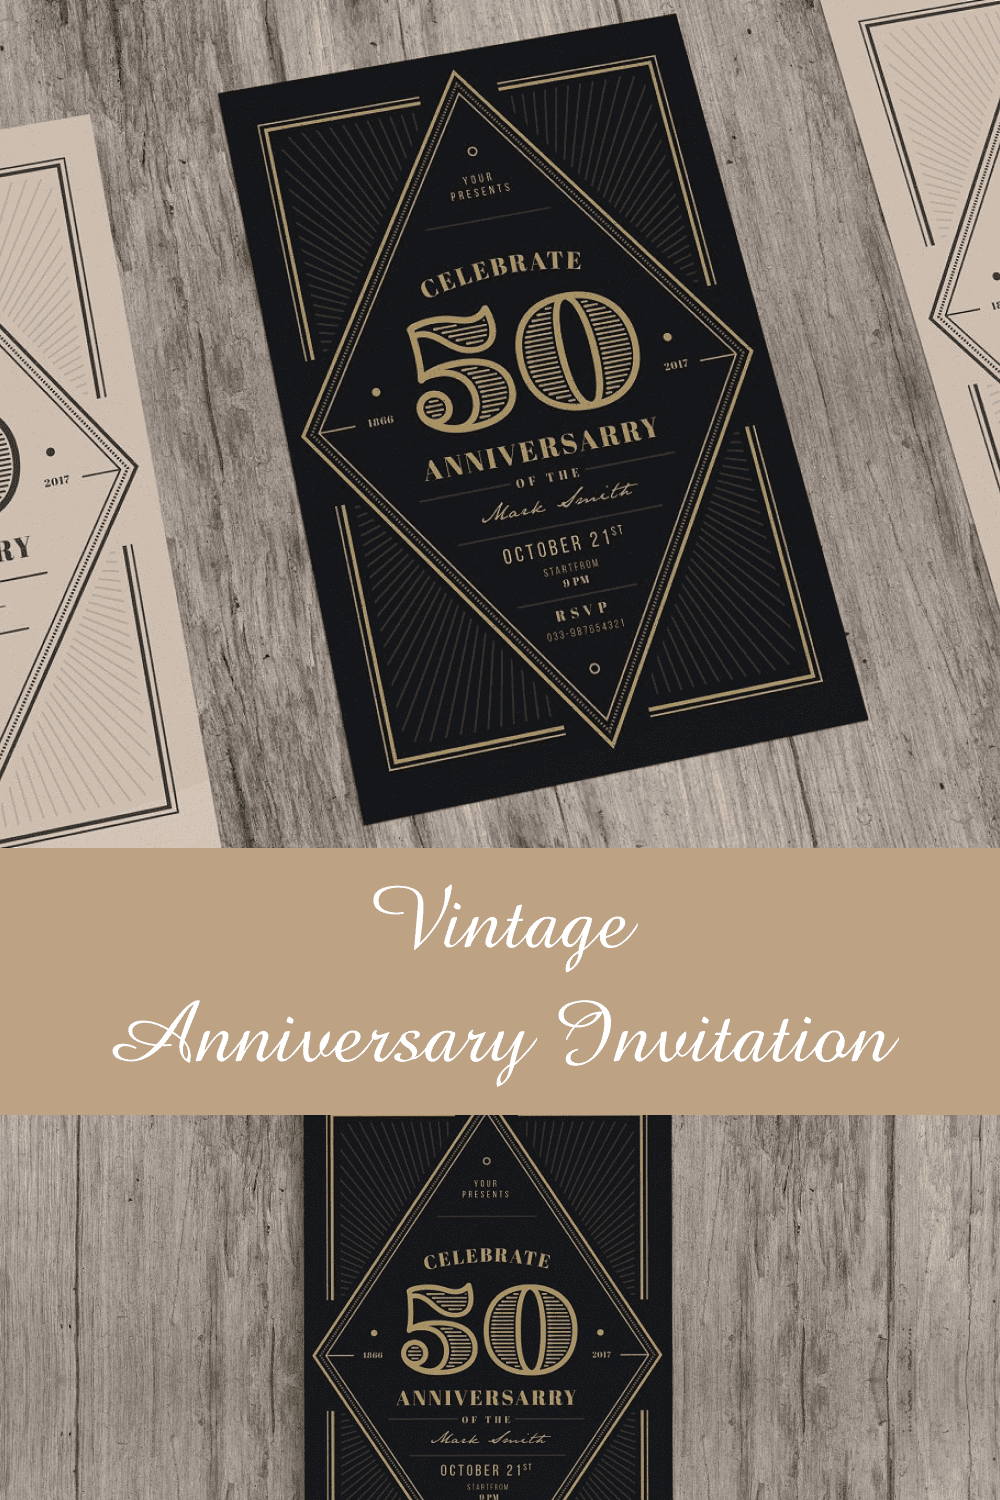 Vintage Anniversary Invitation Pinterest image.